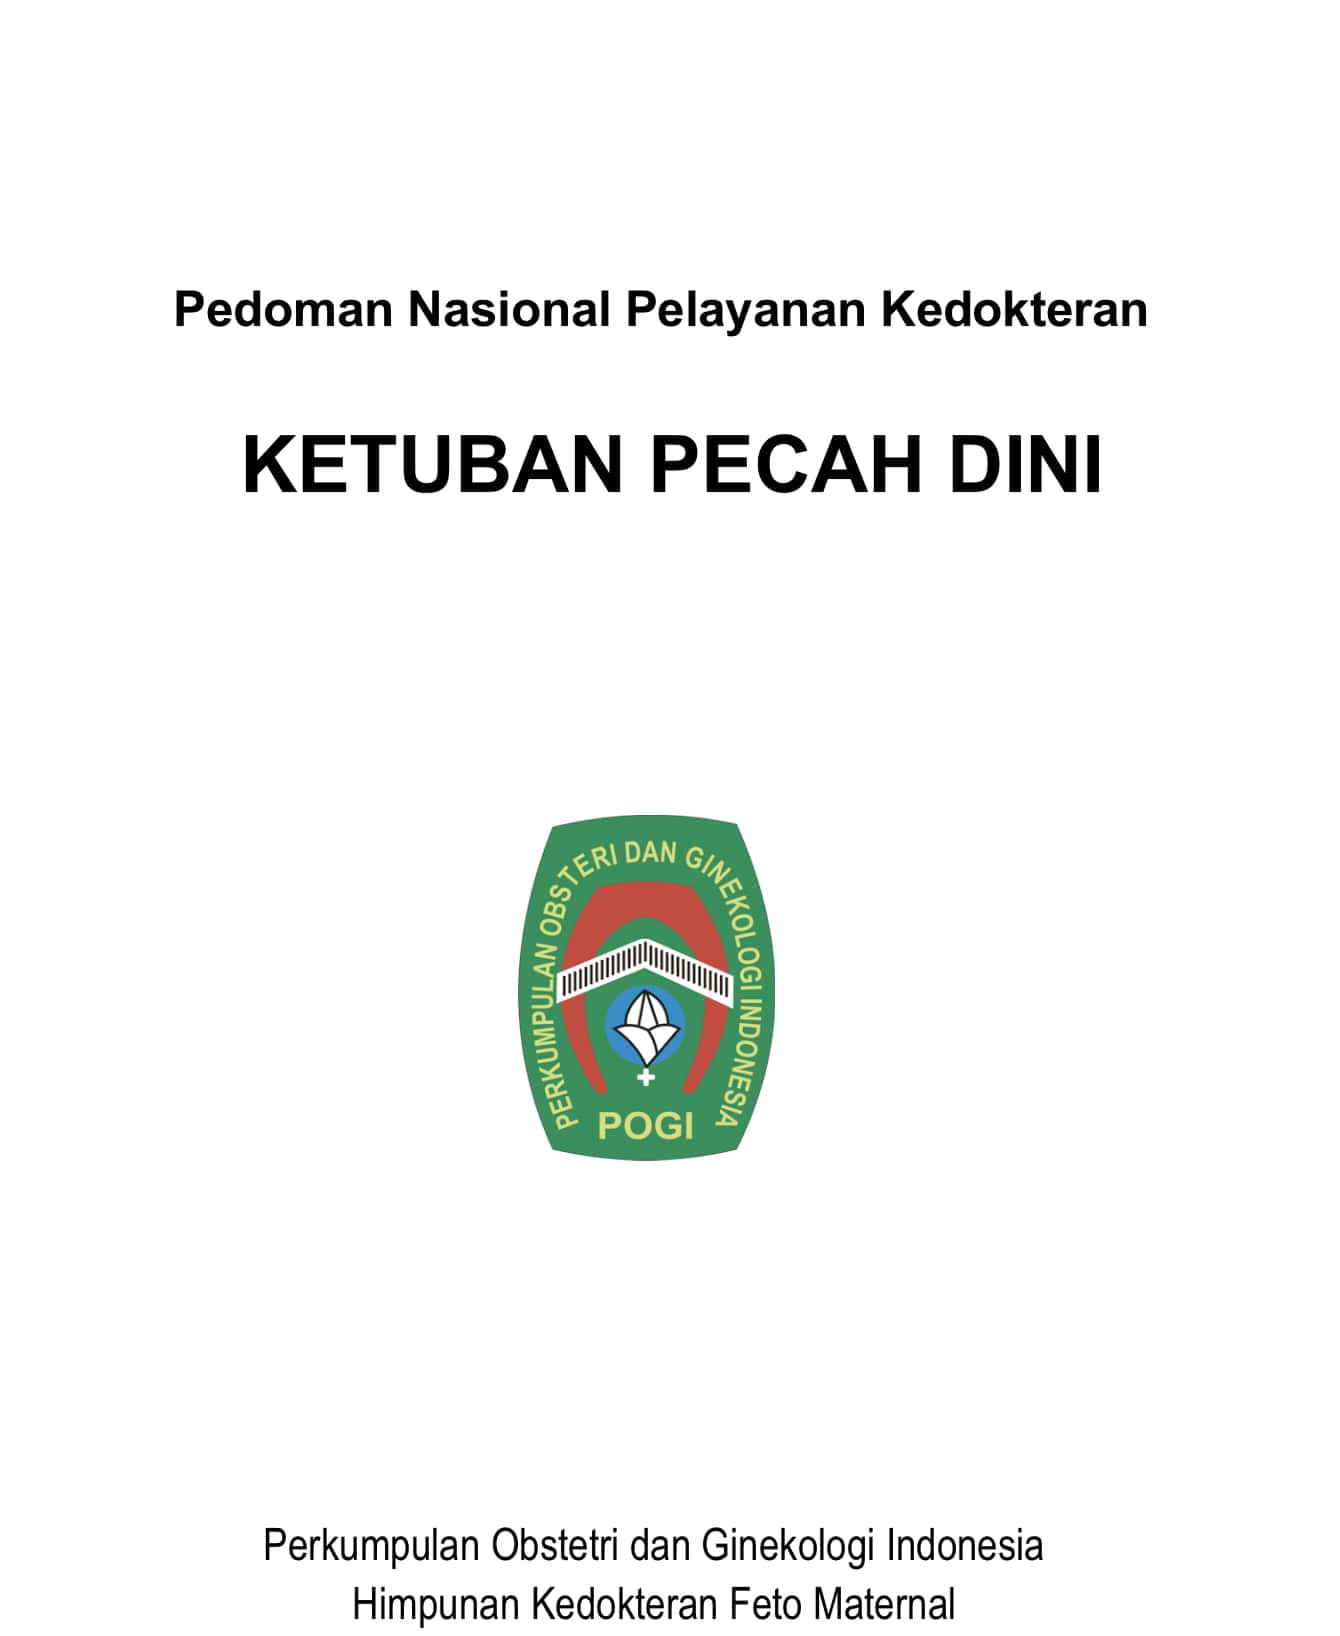 Detail Download Logo Perkeni Jaya Nomer 9